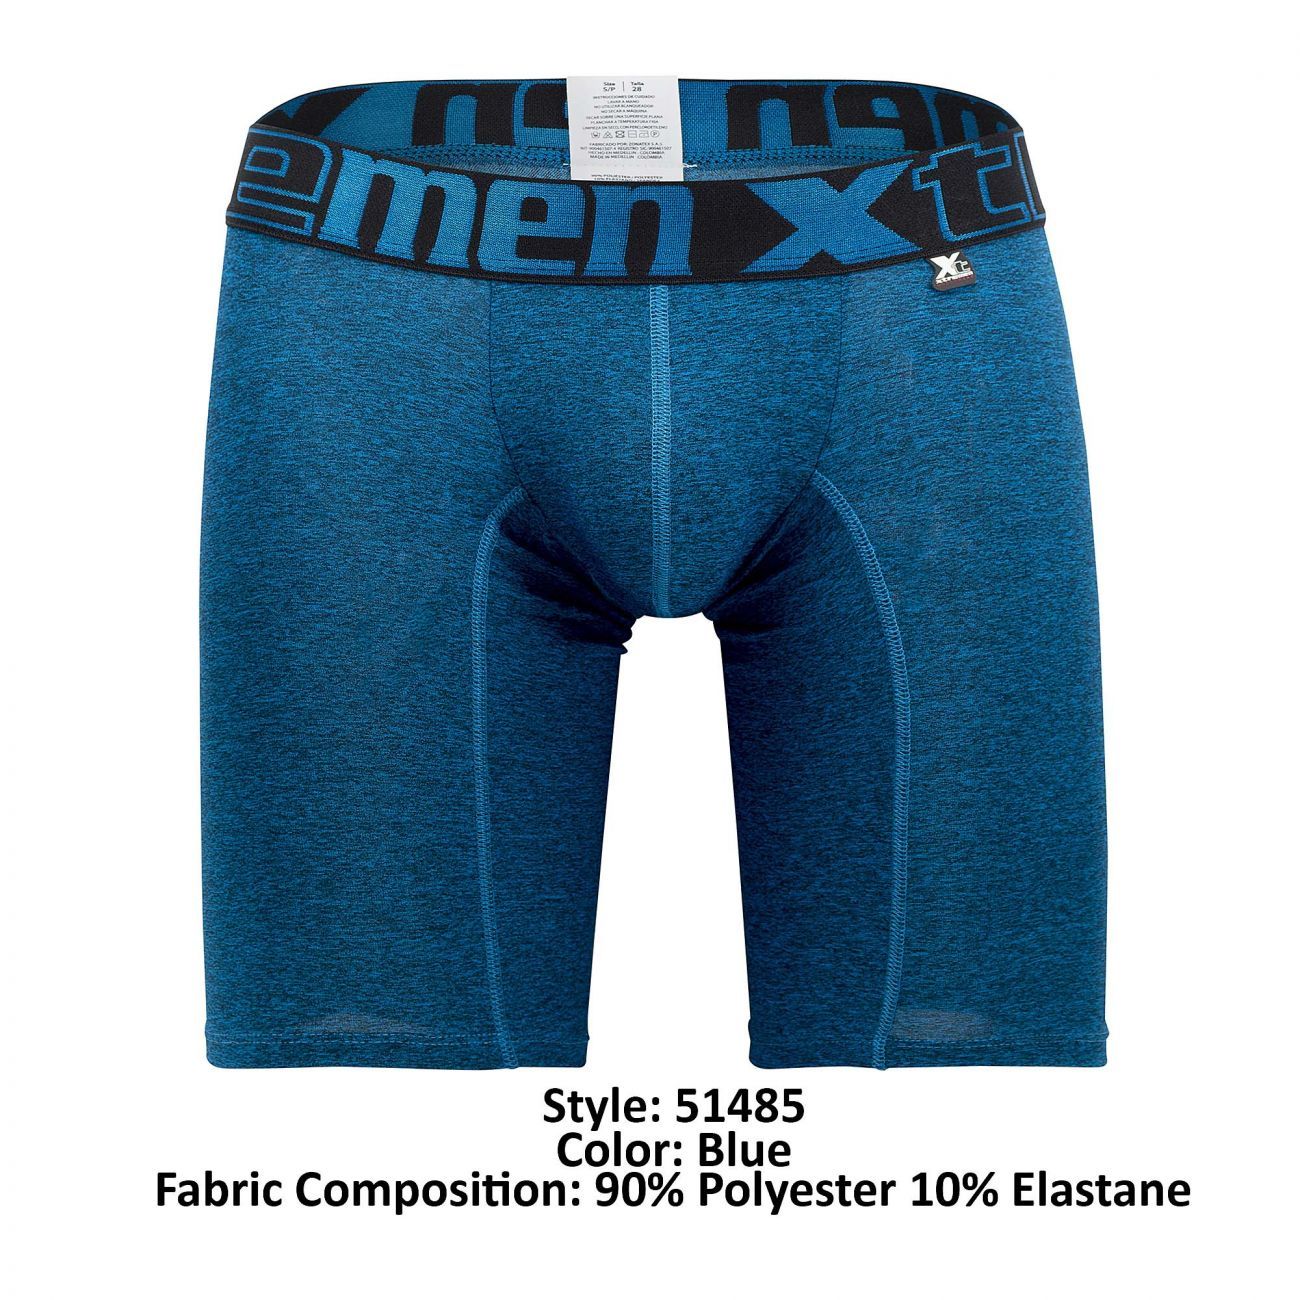 Xtremen 51485 Microfiber Athletic Boxer Briefs Blue - Size XL